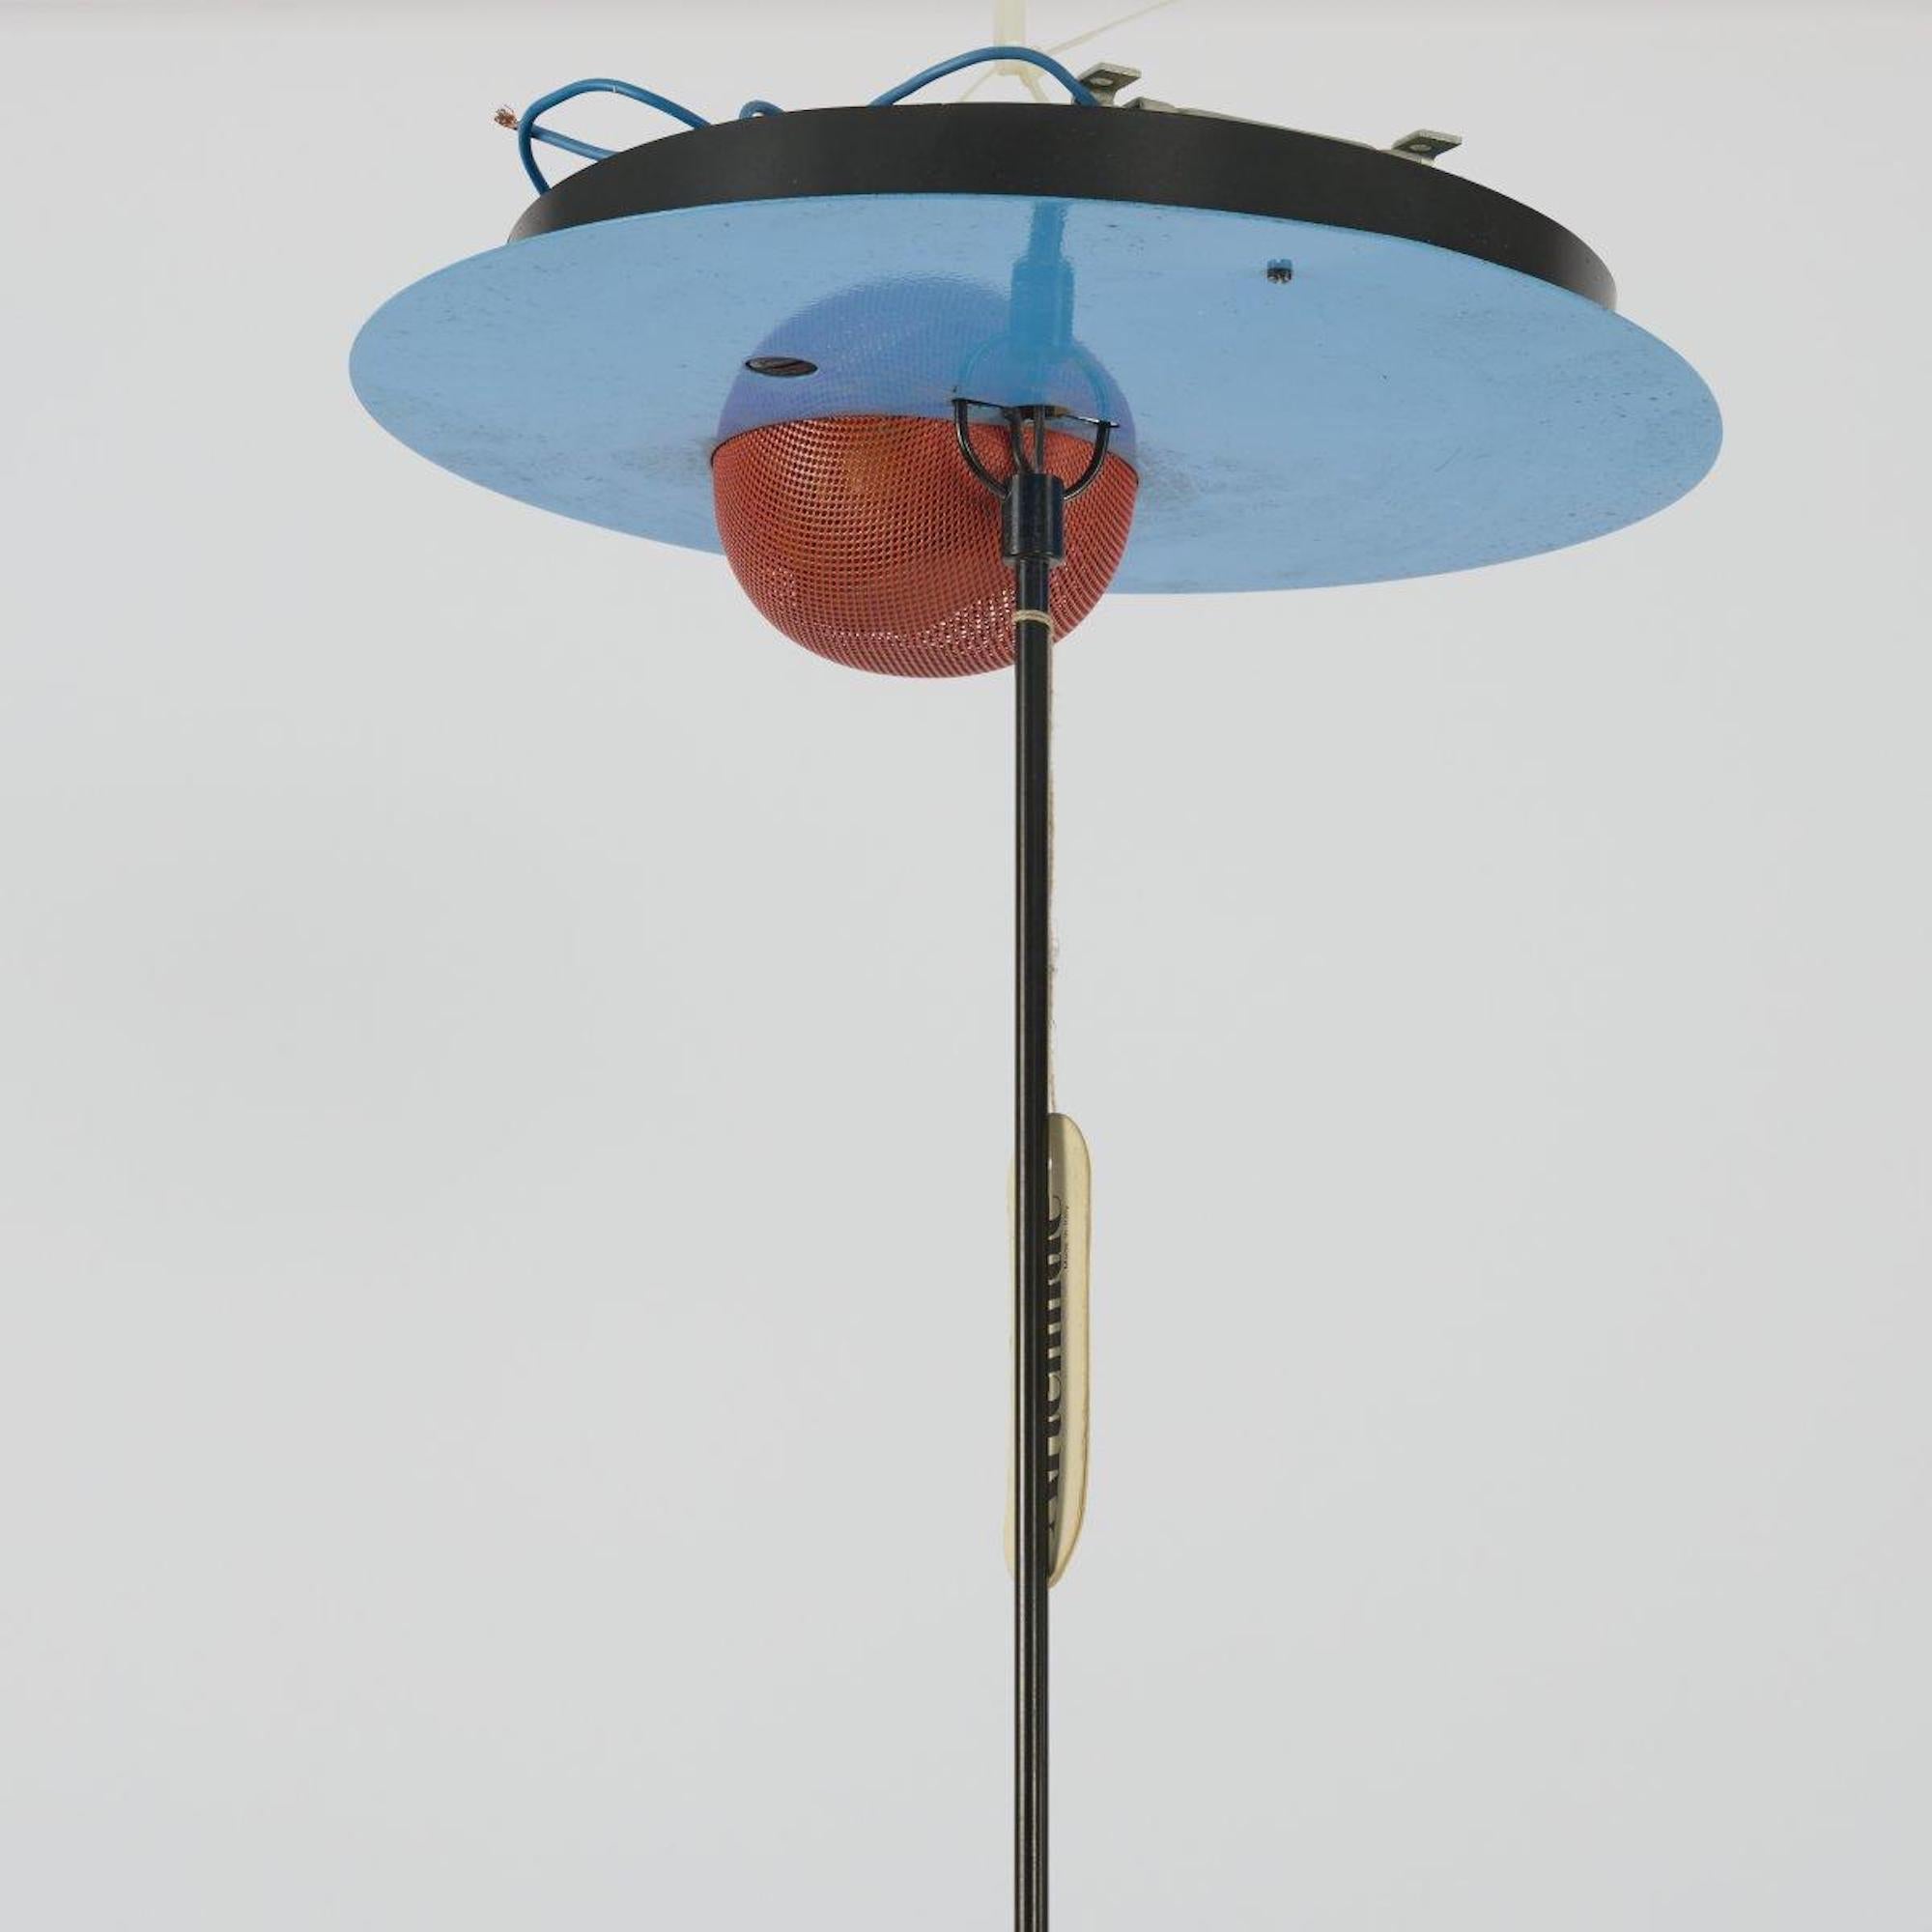 Le plafonnier Alesia a été conçu par Carlo Forcolini en 1981.

H. 108 cm (min.) (extensible), Ø 32 cm.

Fabriqué par Artemide, Milan. Métal tubulaire, tôle peinte en rouge, bleu et noir, grillage métallique peint en rouge. Label : autocollant du